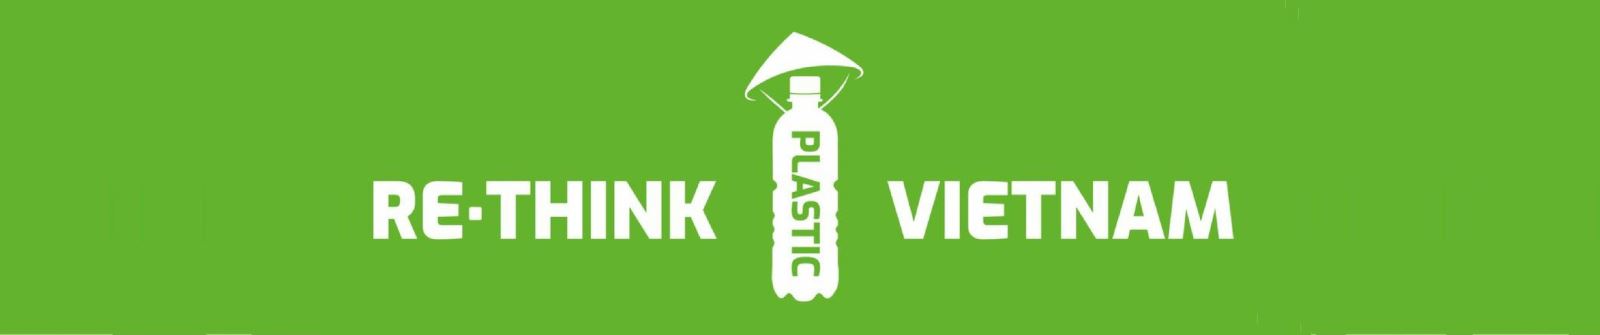 Nếp Bảo vệ Môi trường: Những ý tưởng tái chế và tận dụng nhựa